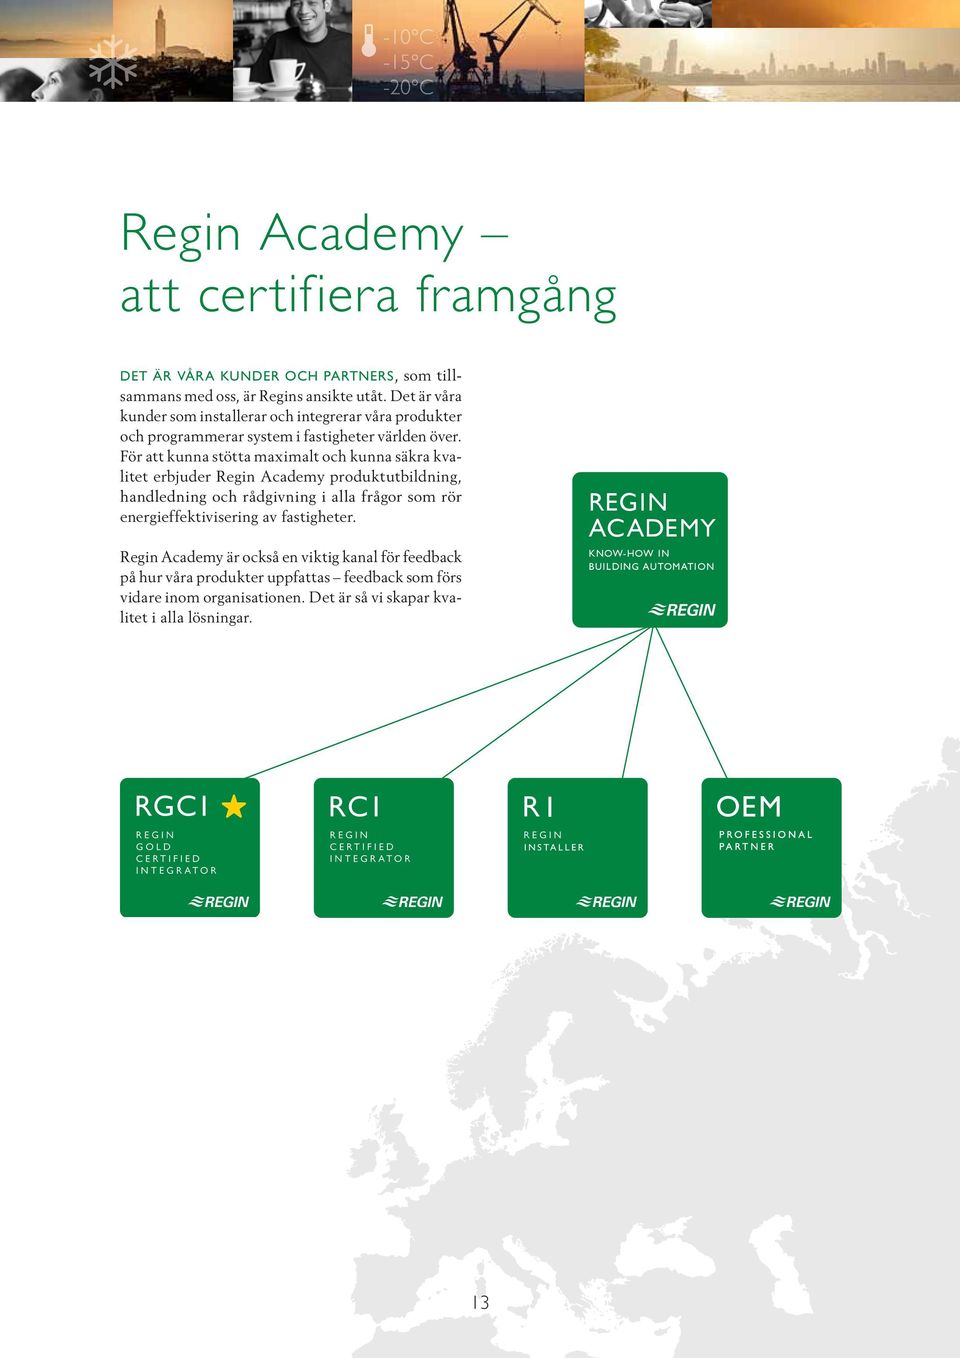 För att kunna stötta maximalt och kunna säkra kvalitet erbjuder Regin Academy produktutbildning, handledning och rådgivning i alla frågor som rör energieffektivisering